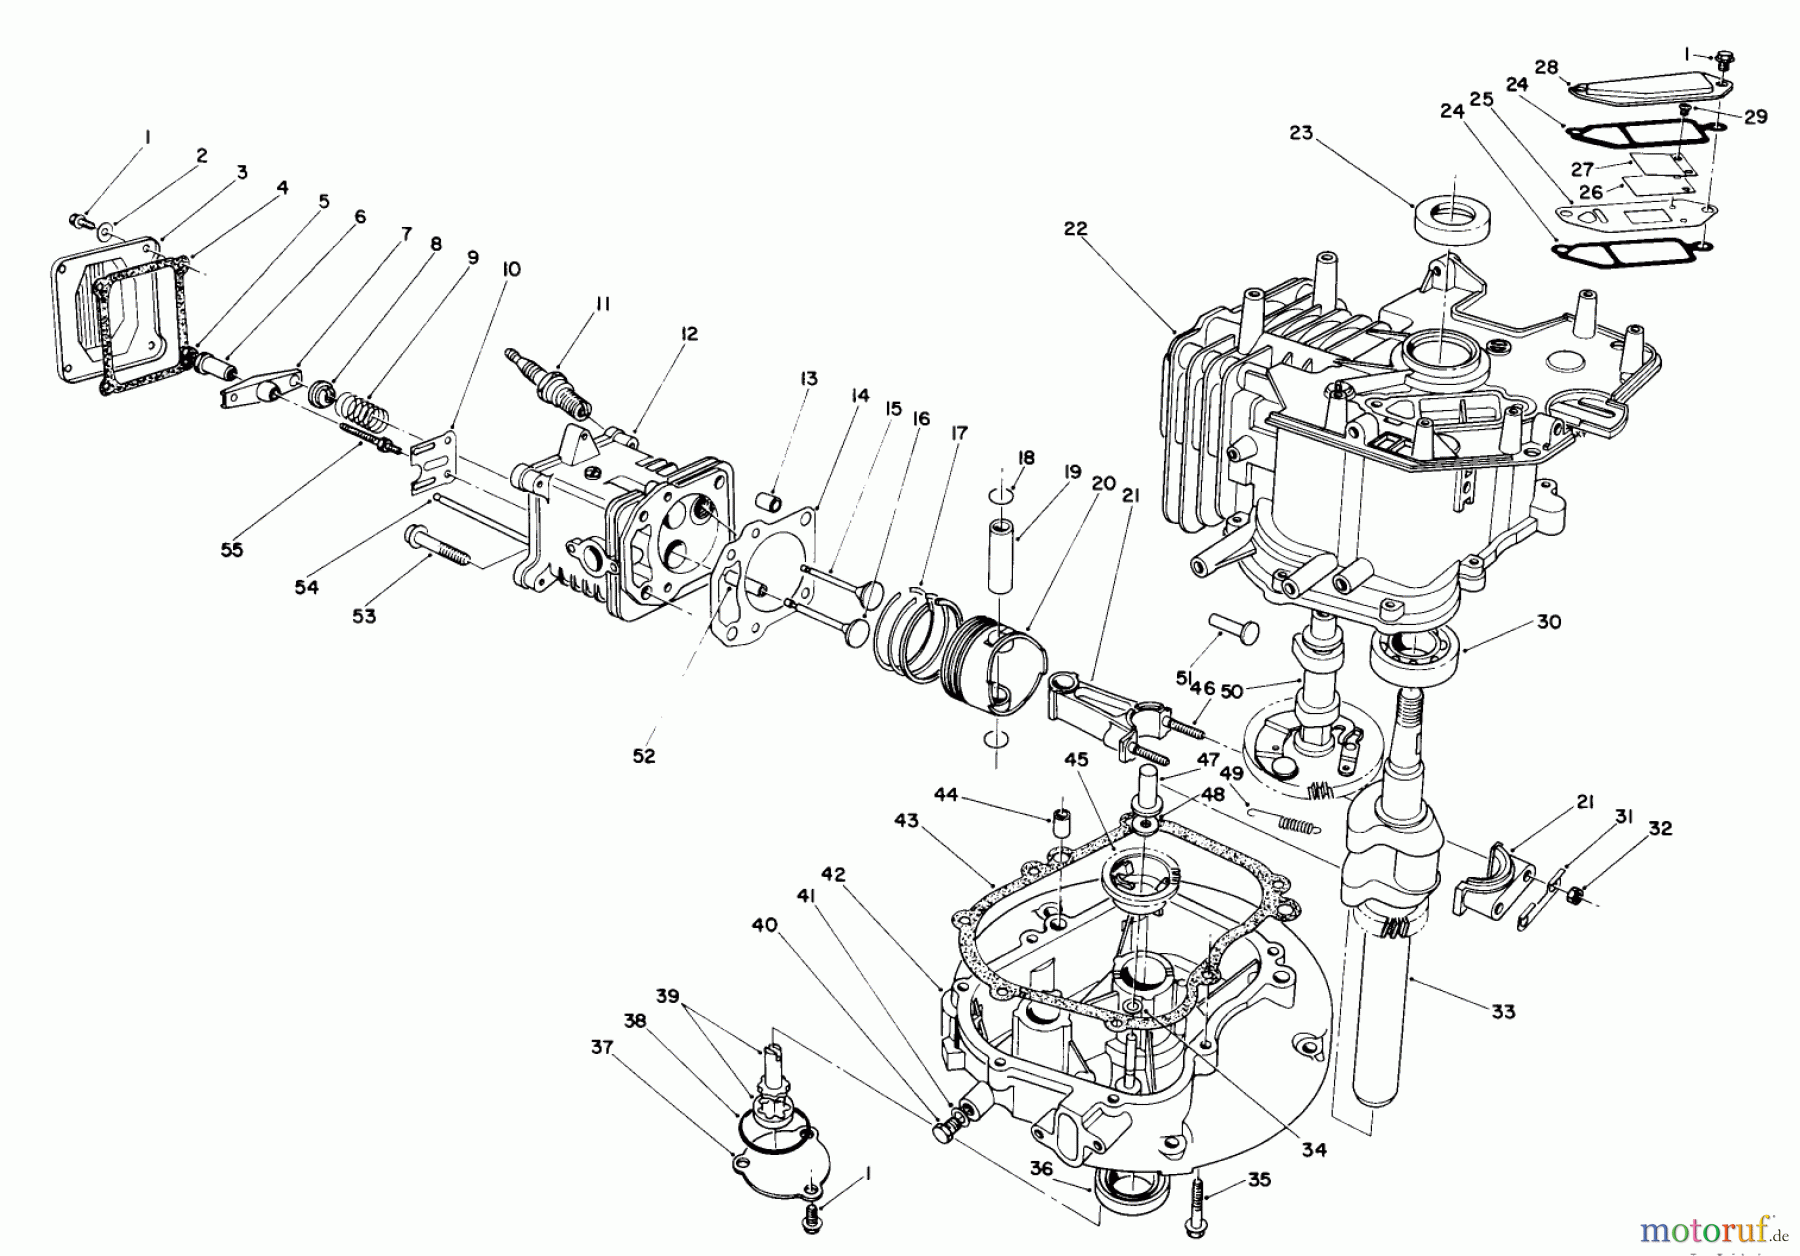  Toro Neu Mowers, Walk-Behind Seite 2 26620B - Toro Lawnmower, 1991 (1000001-1999999) CRANKCASE ASSEMBLY (ENGINE NO. VM140)